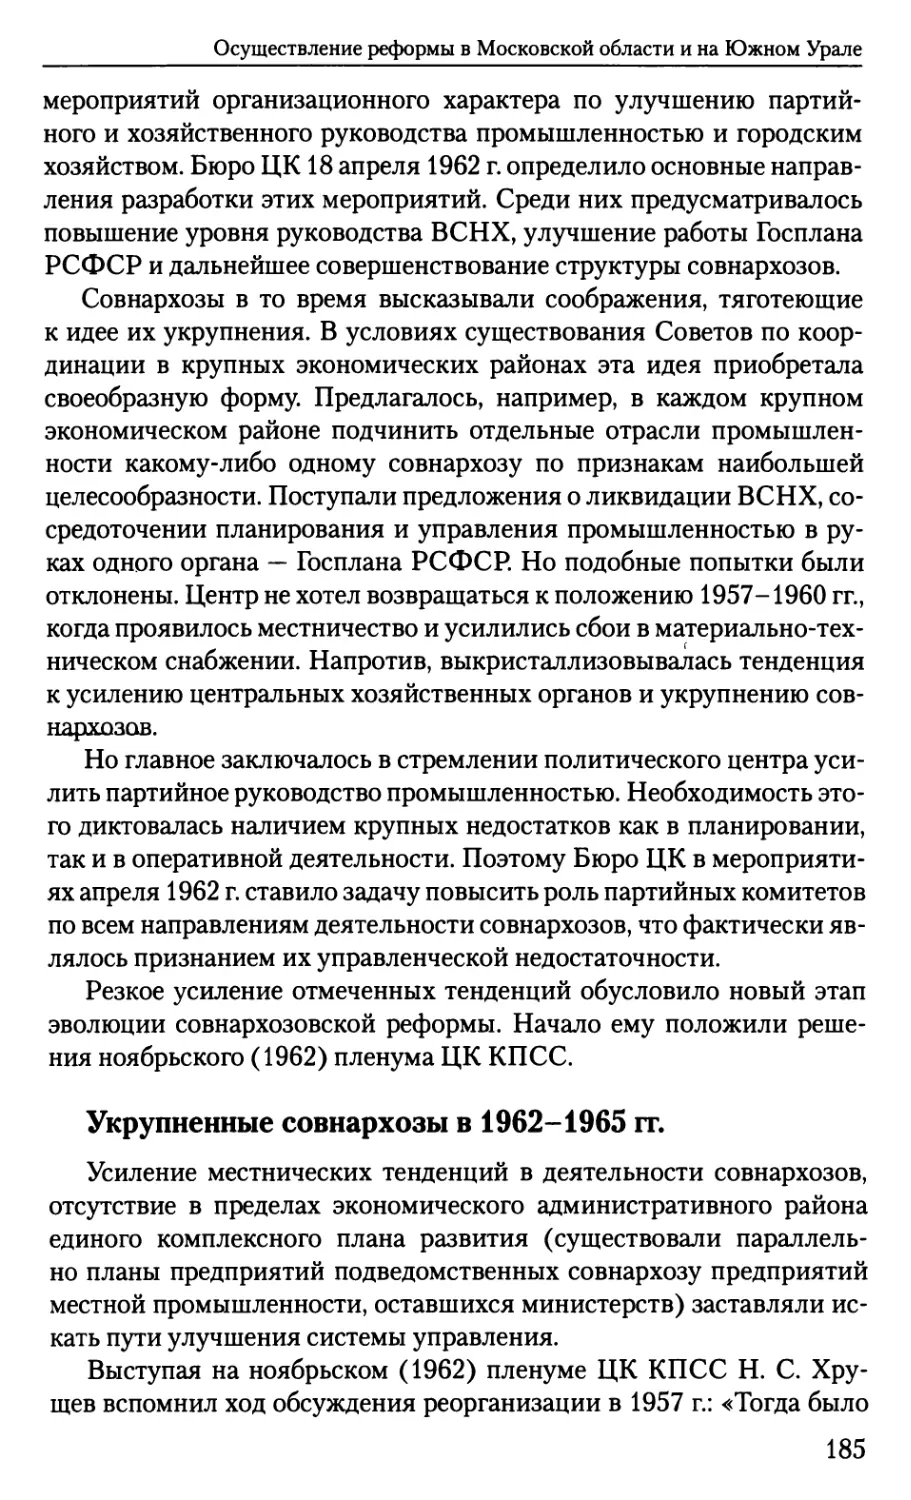 Укрупненные совнархозы в 1962-1965 гг